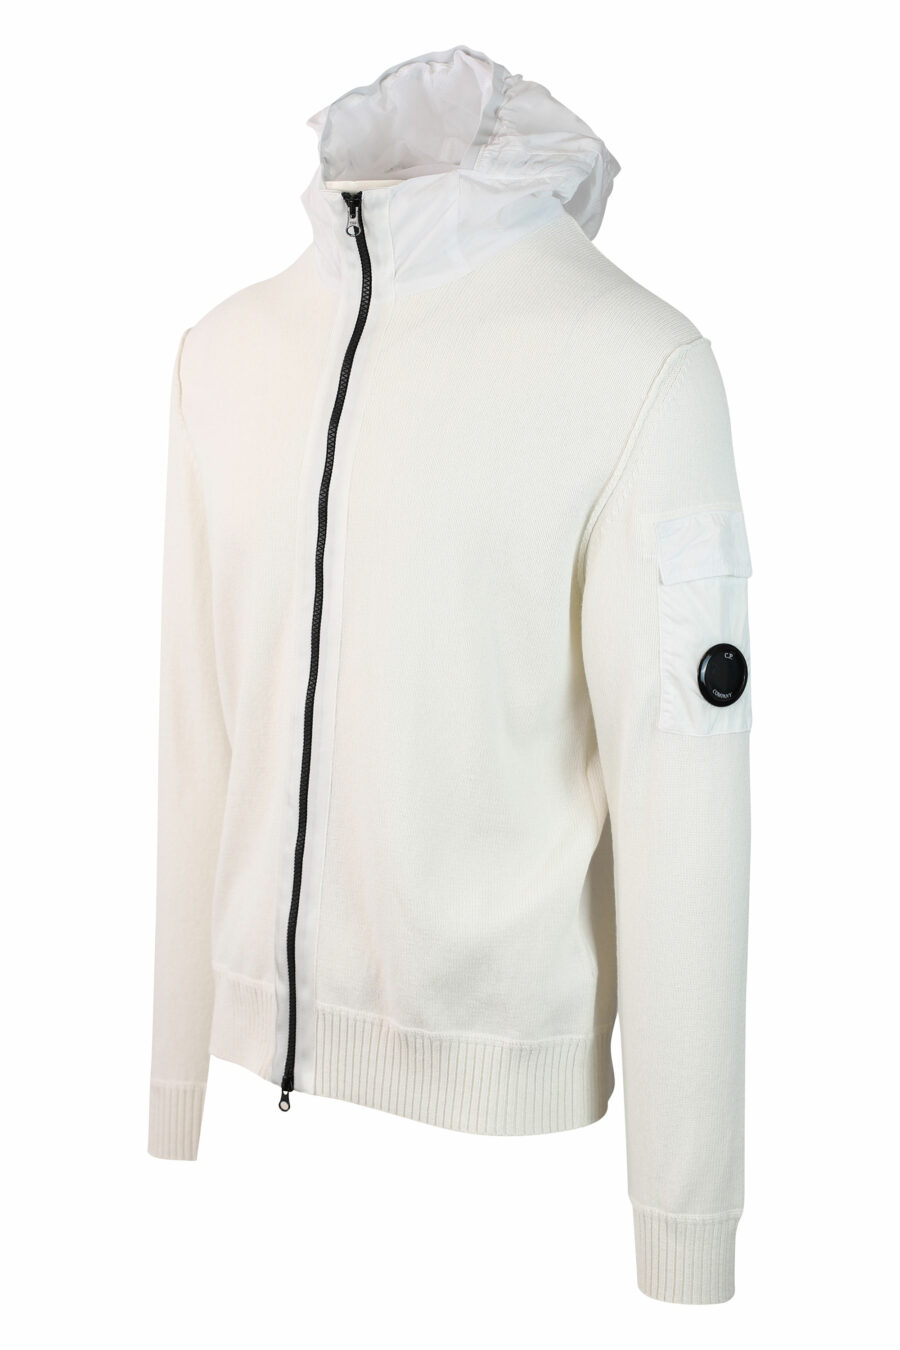 Sudadera blanca con capucha con cremallera y minilogo circular - IMG 0129